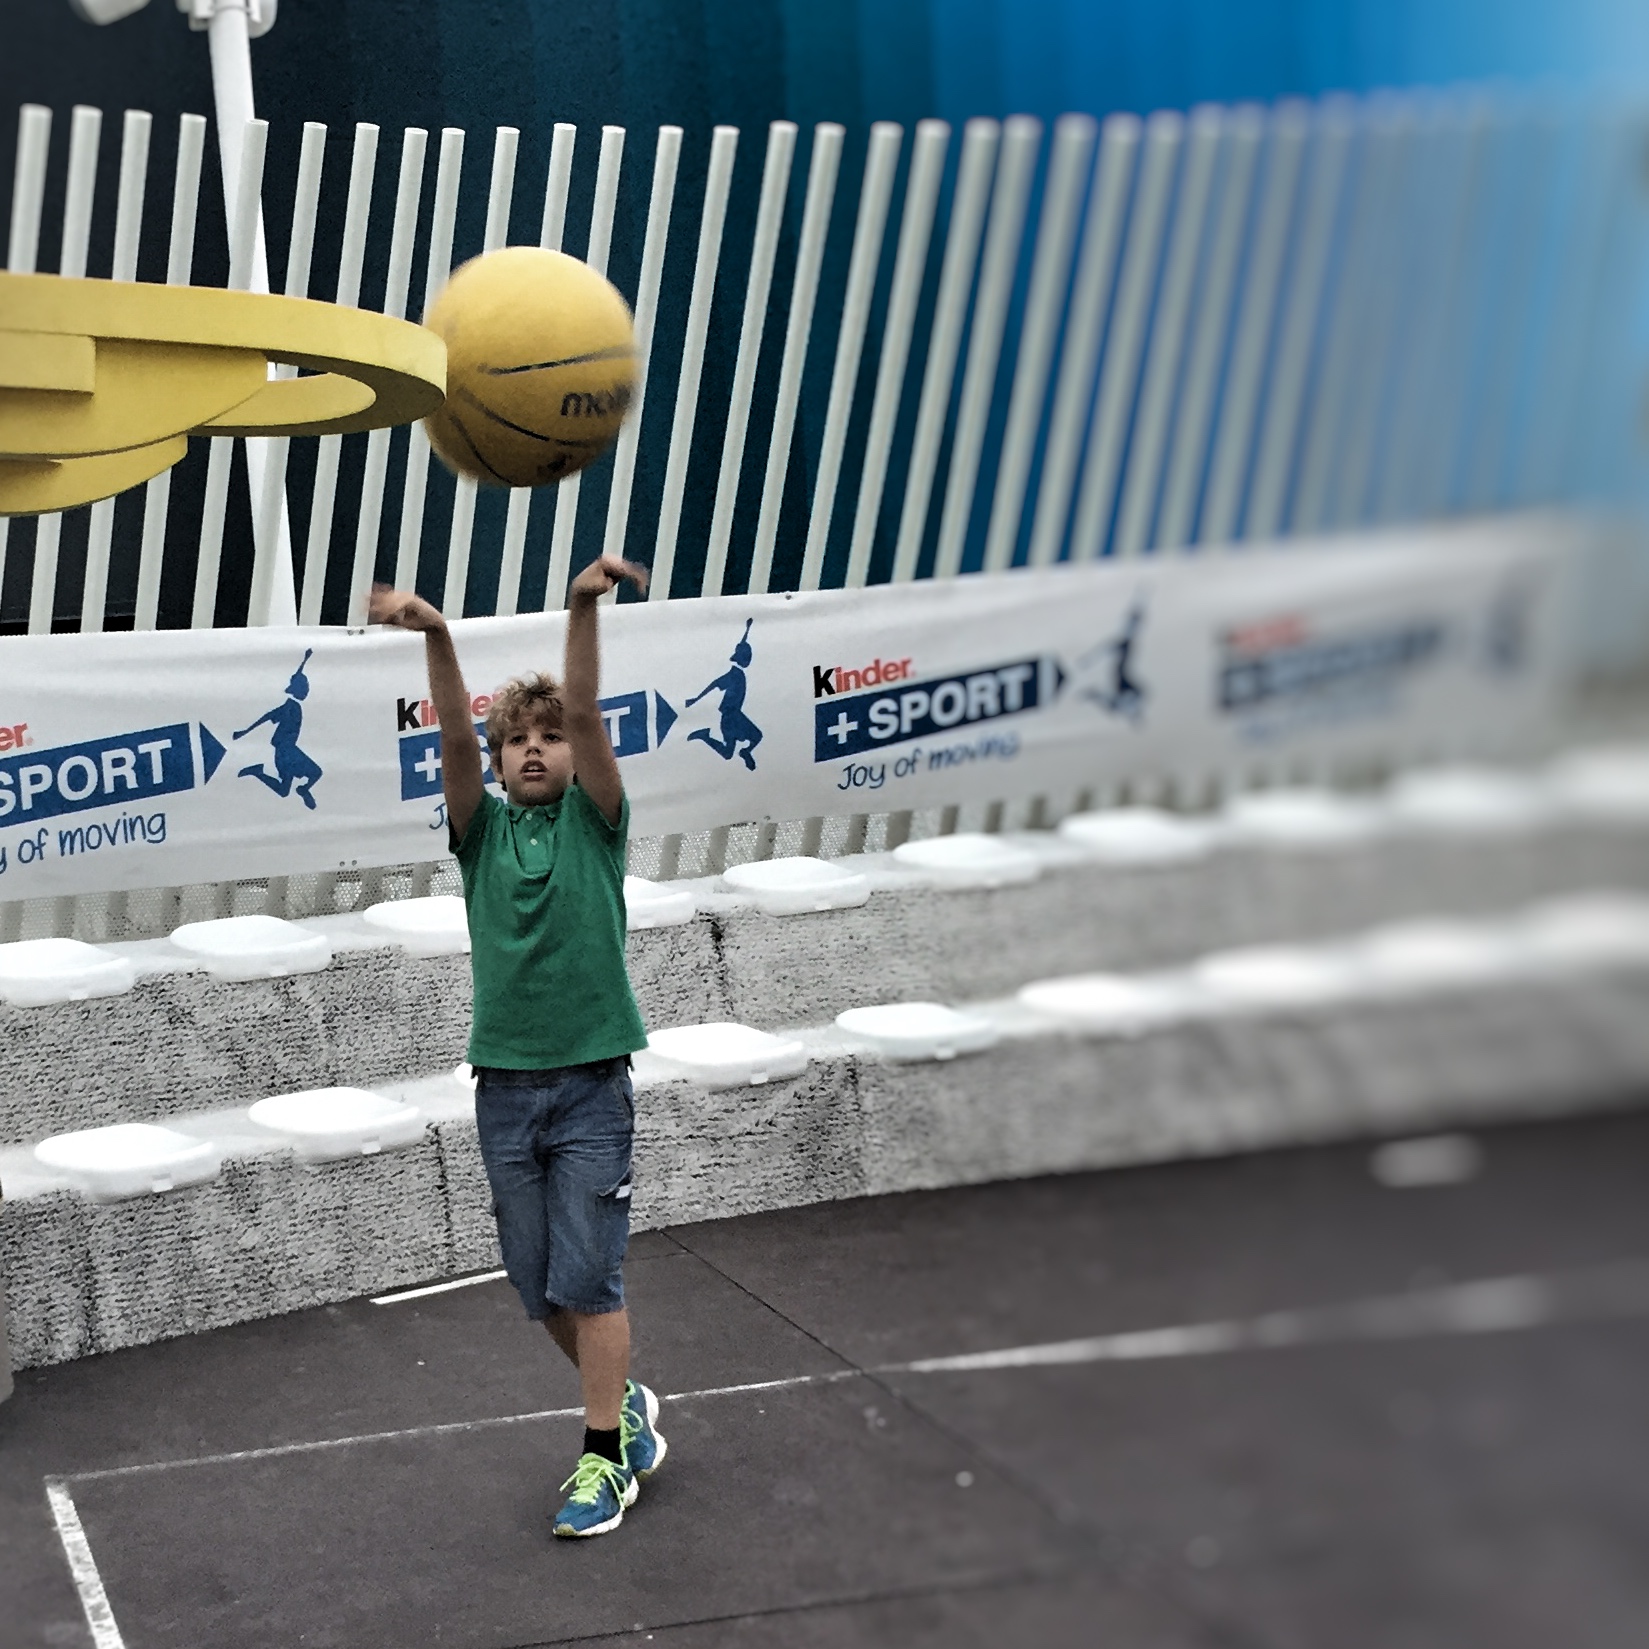 Kinder+Sport pallacanestro